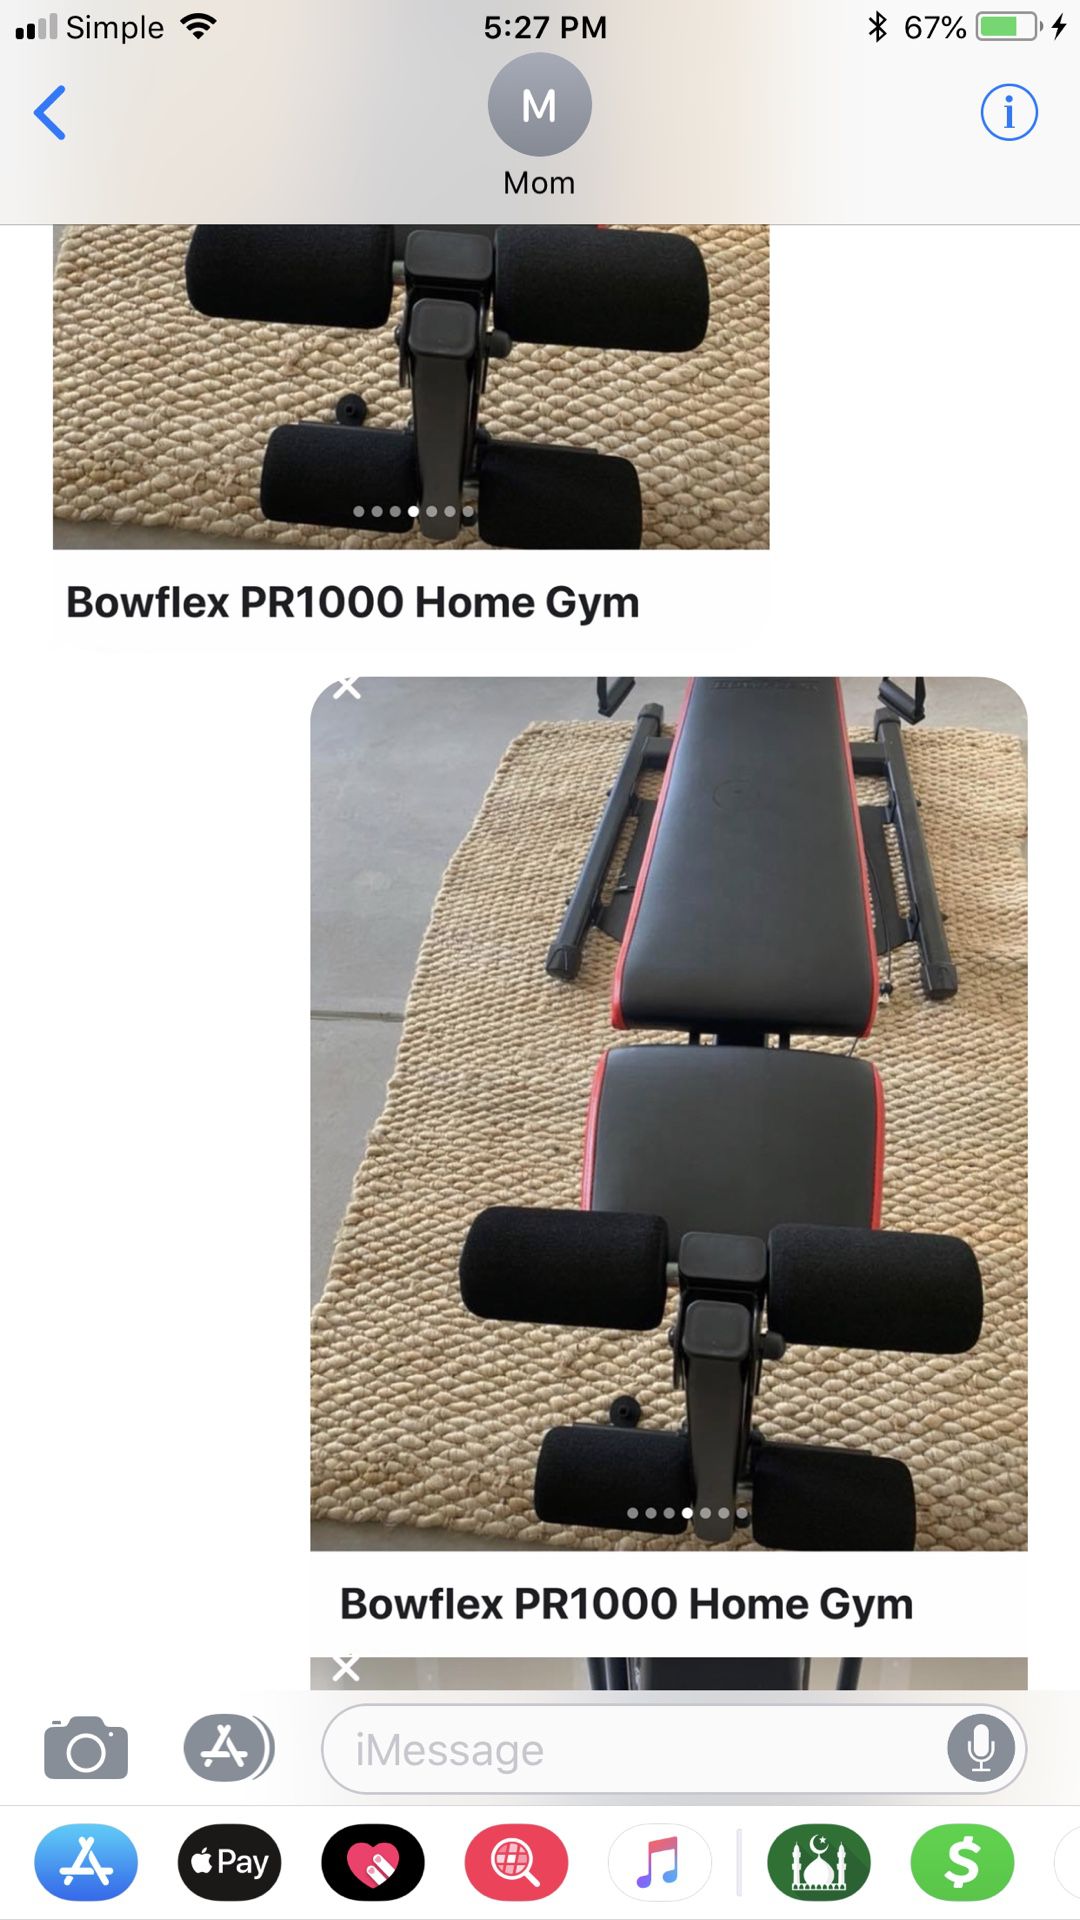 Bow flex home gym